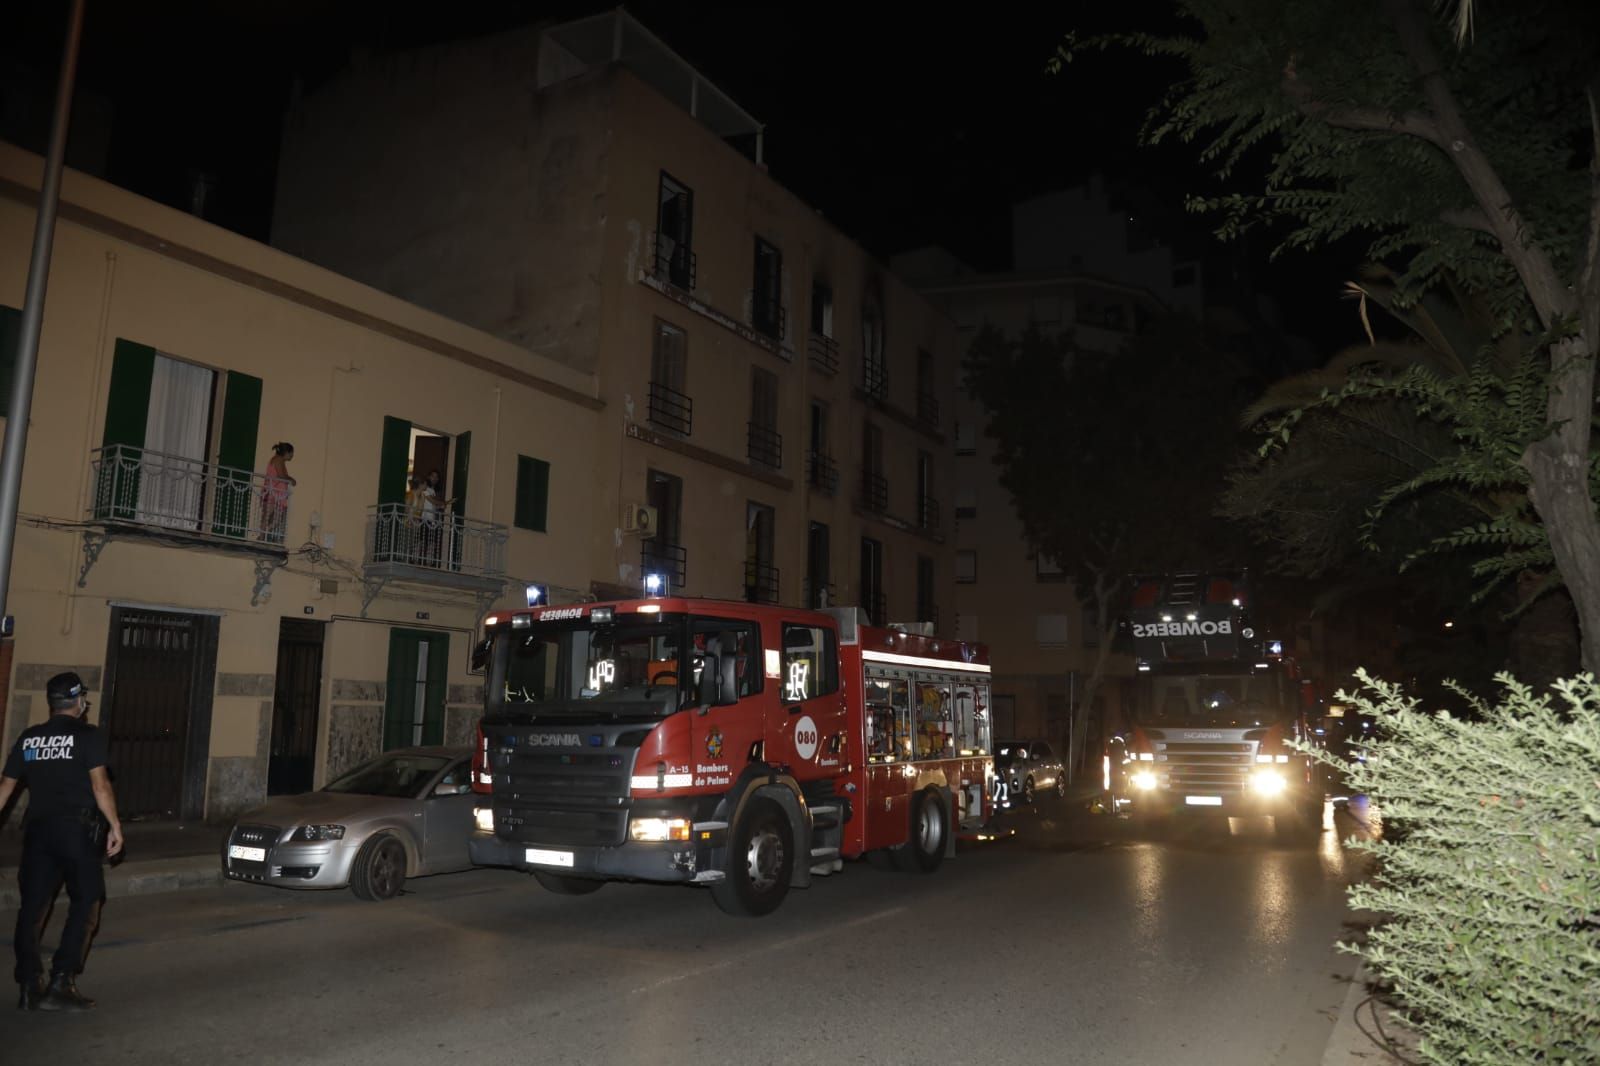 Arde un edificio okupado de la calle Manacor, en Palma